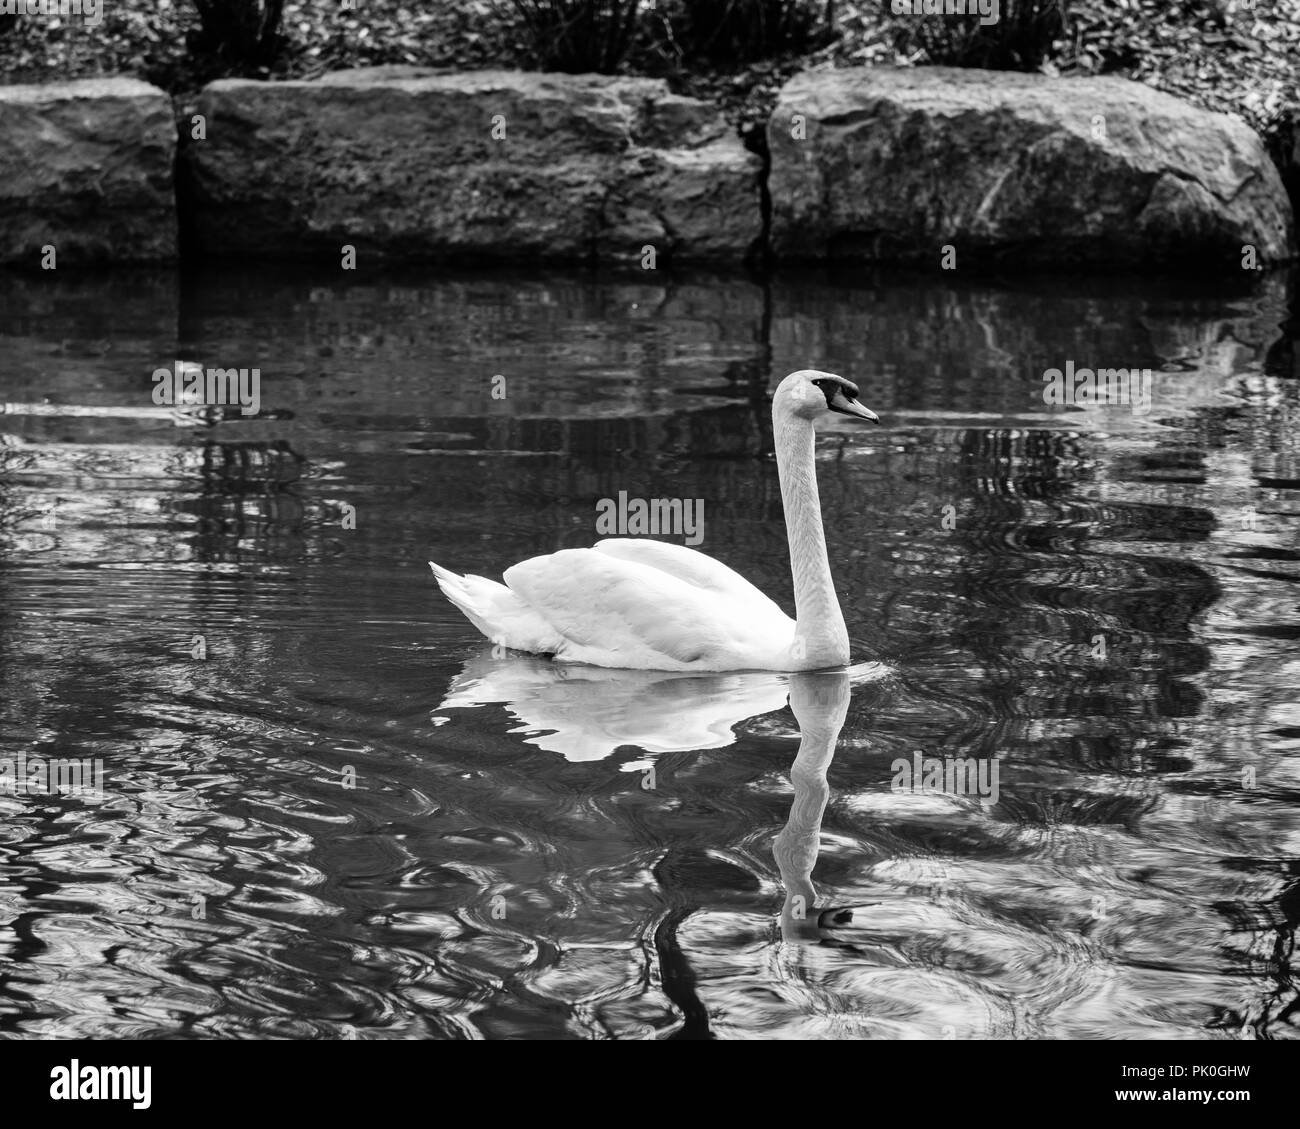 Cisne nadando en un estanque con el murmullo del agua en blanco y negro Foto de stock